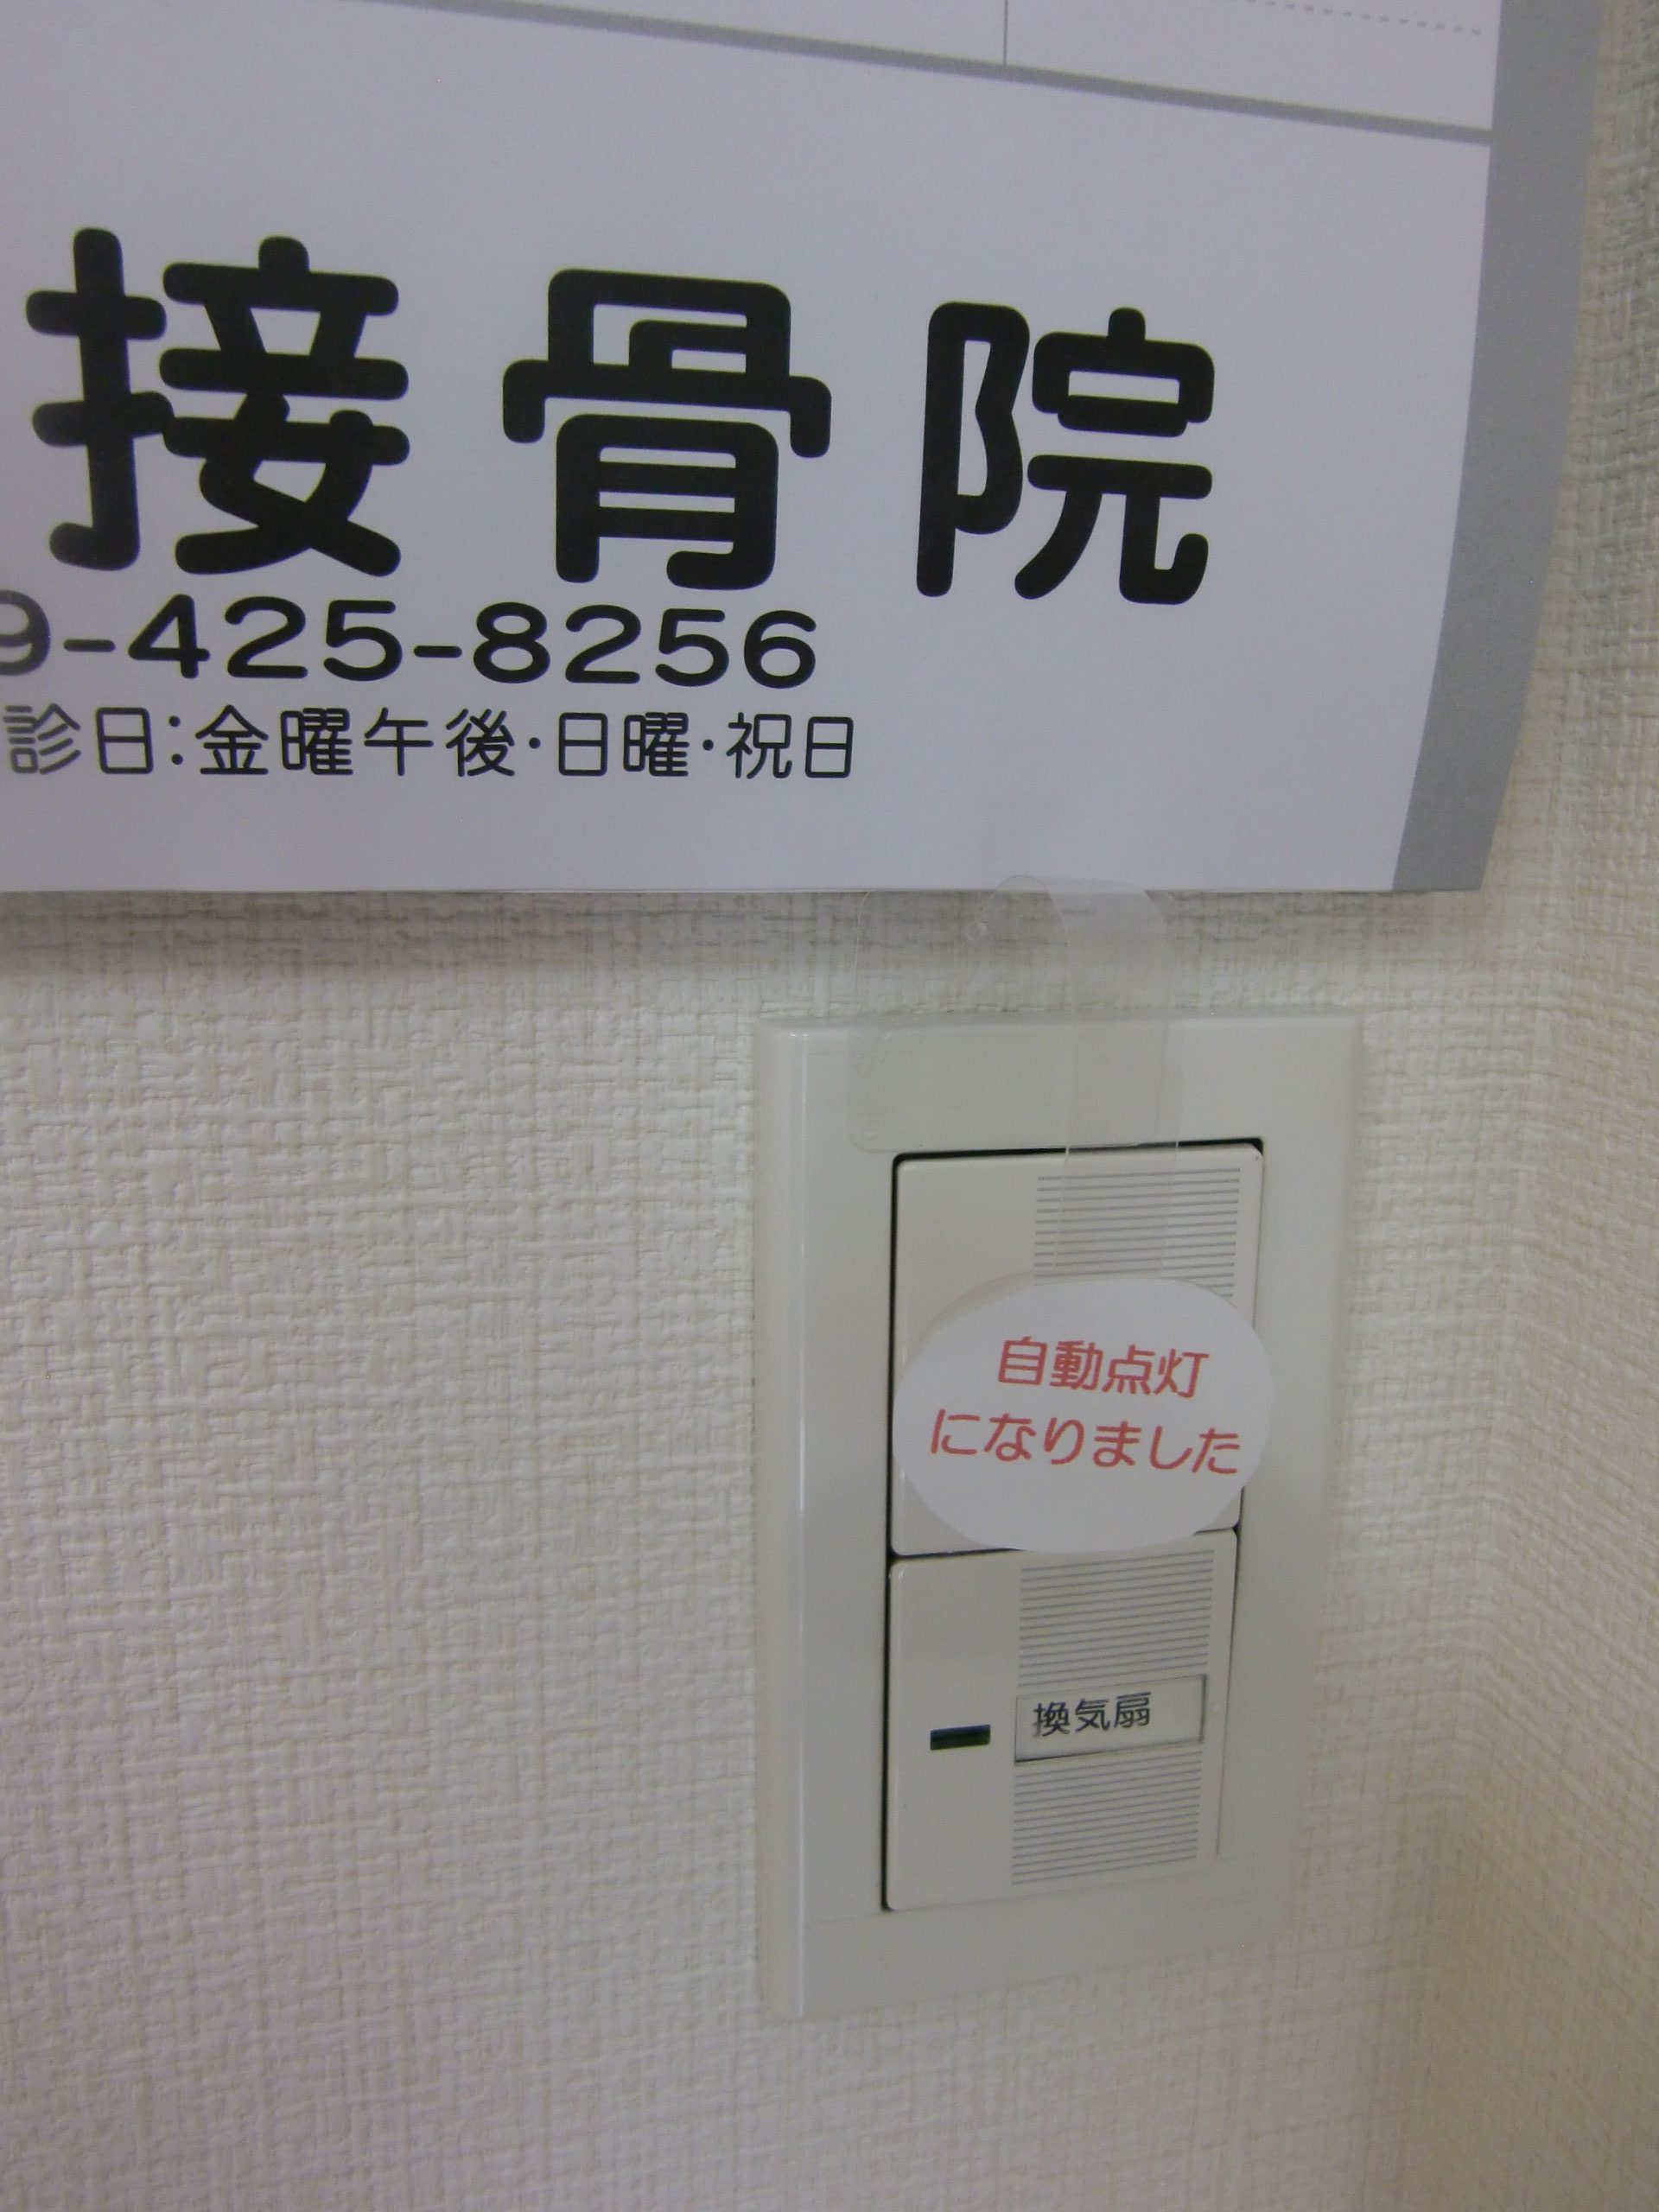 トイレの電気スイッチをセンサー式に変更しました。｜お知らせ｜加古川・東加古川で腰痛、坐骨神経痛でお困りなら、たなか